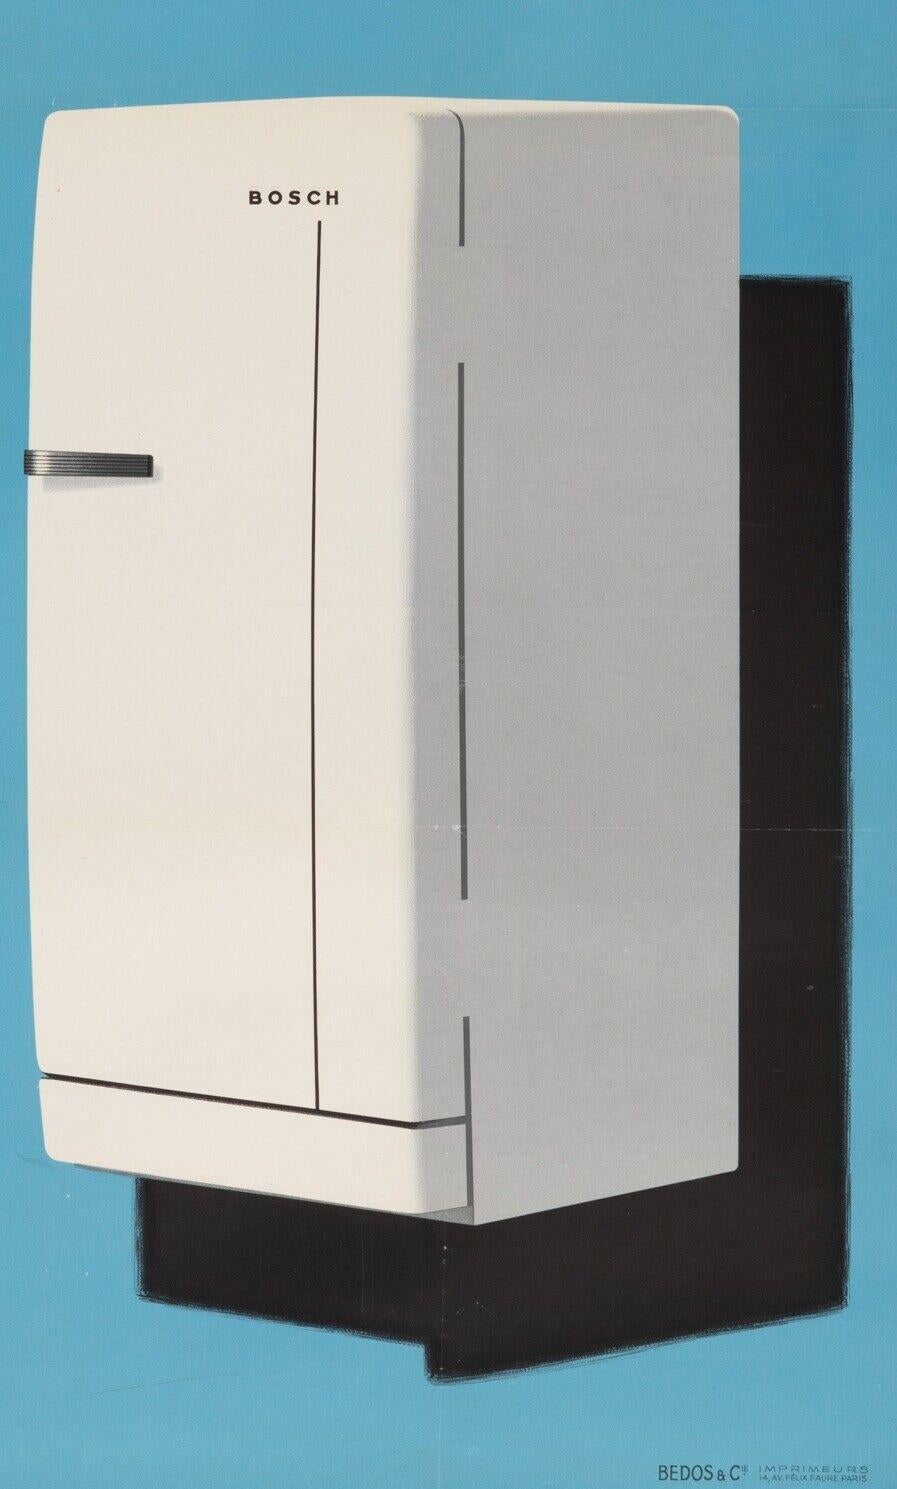 1963 refrigerator